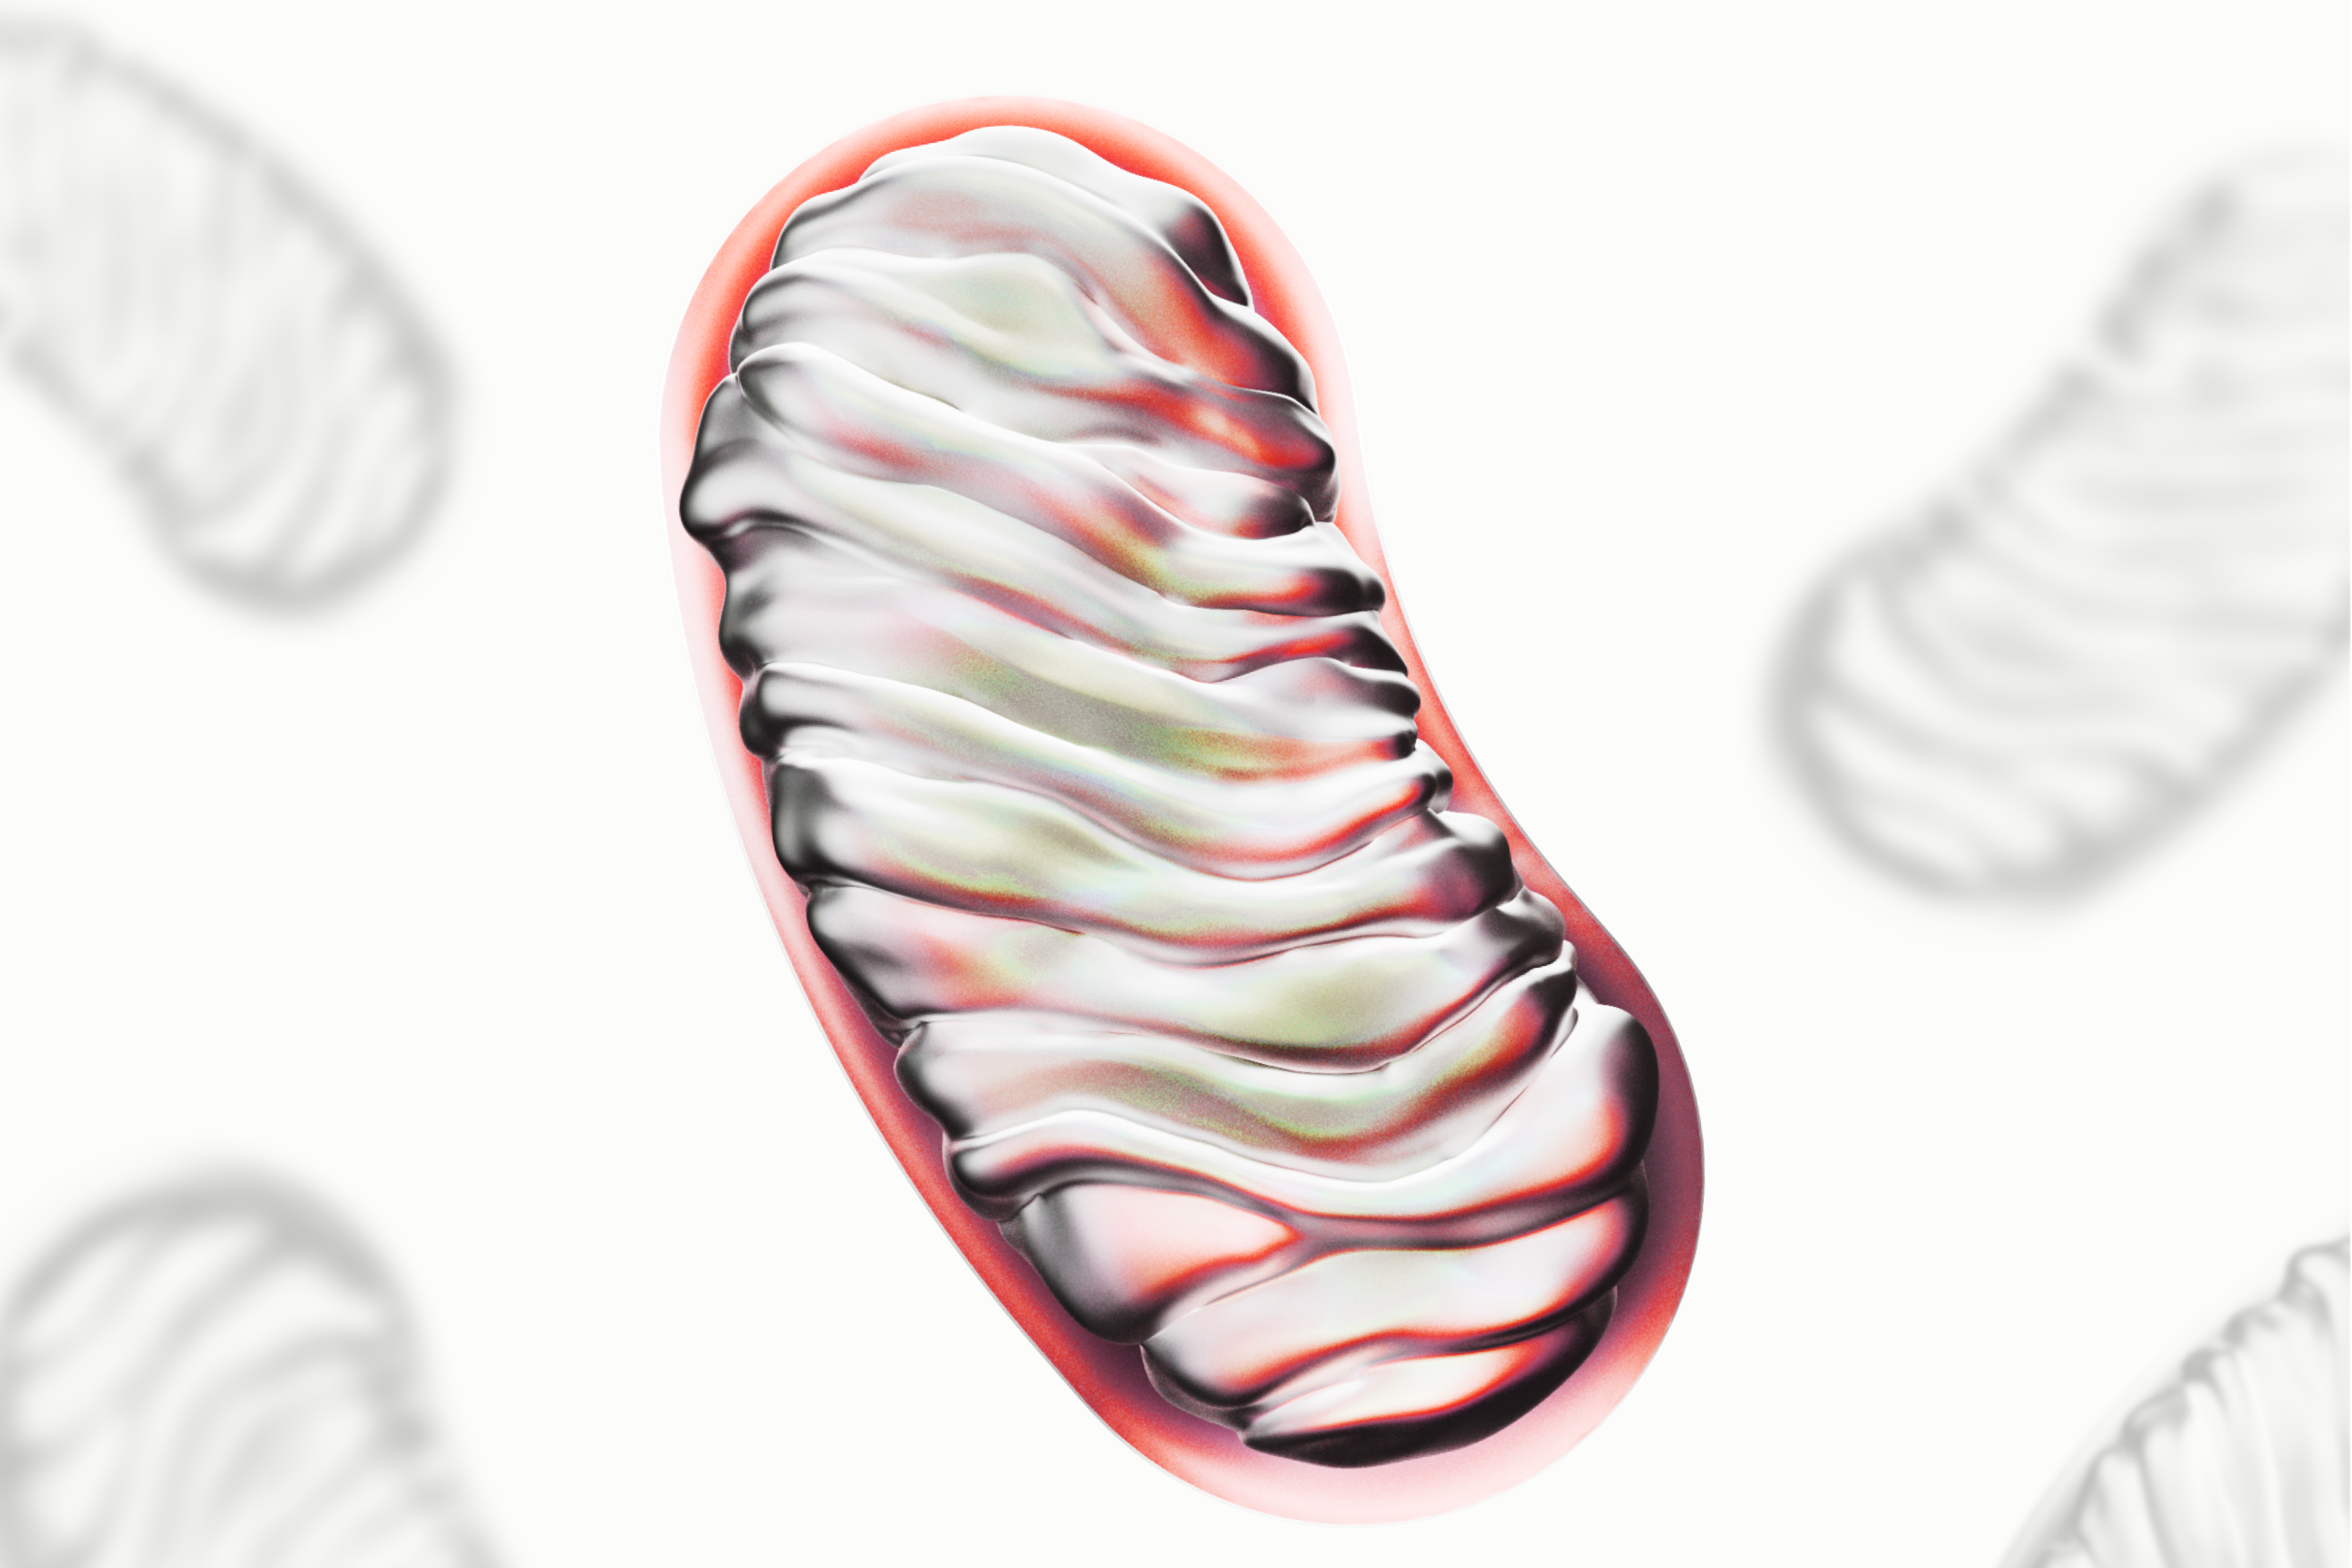 3D representation of an active mitochondria